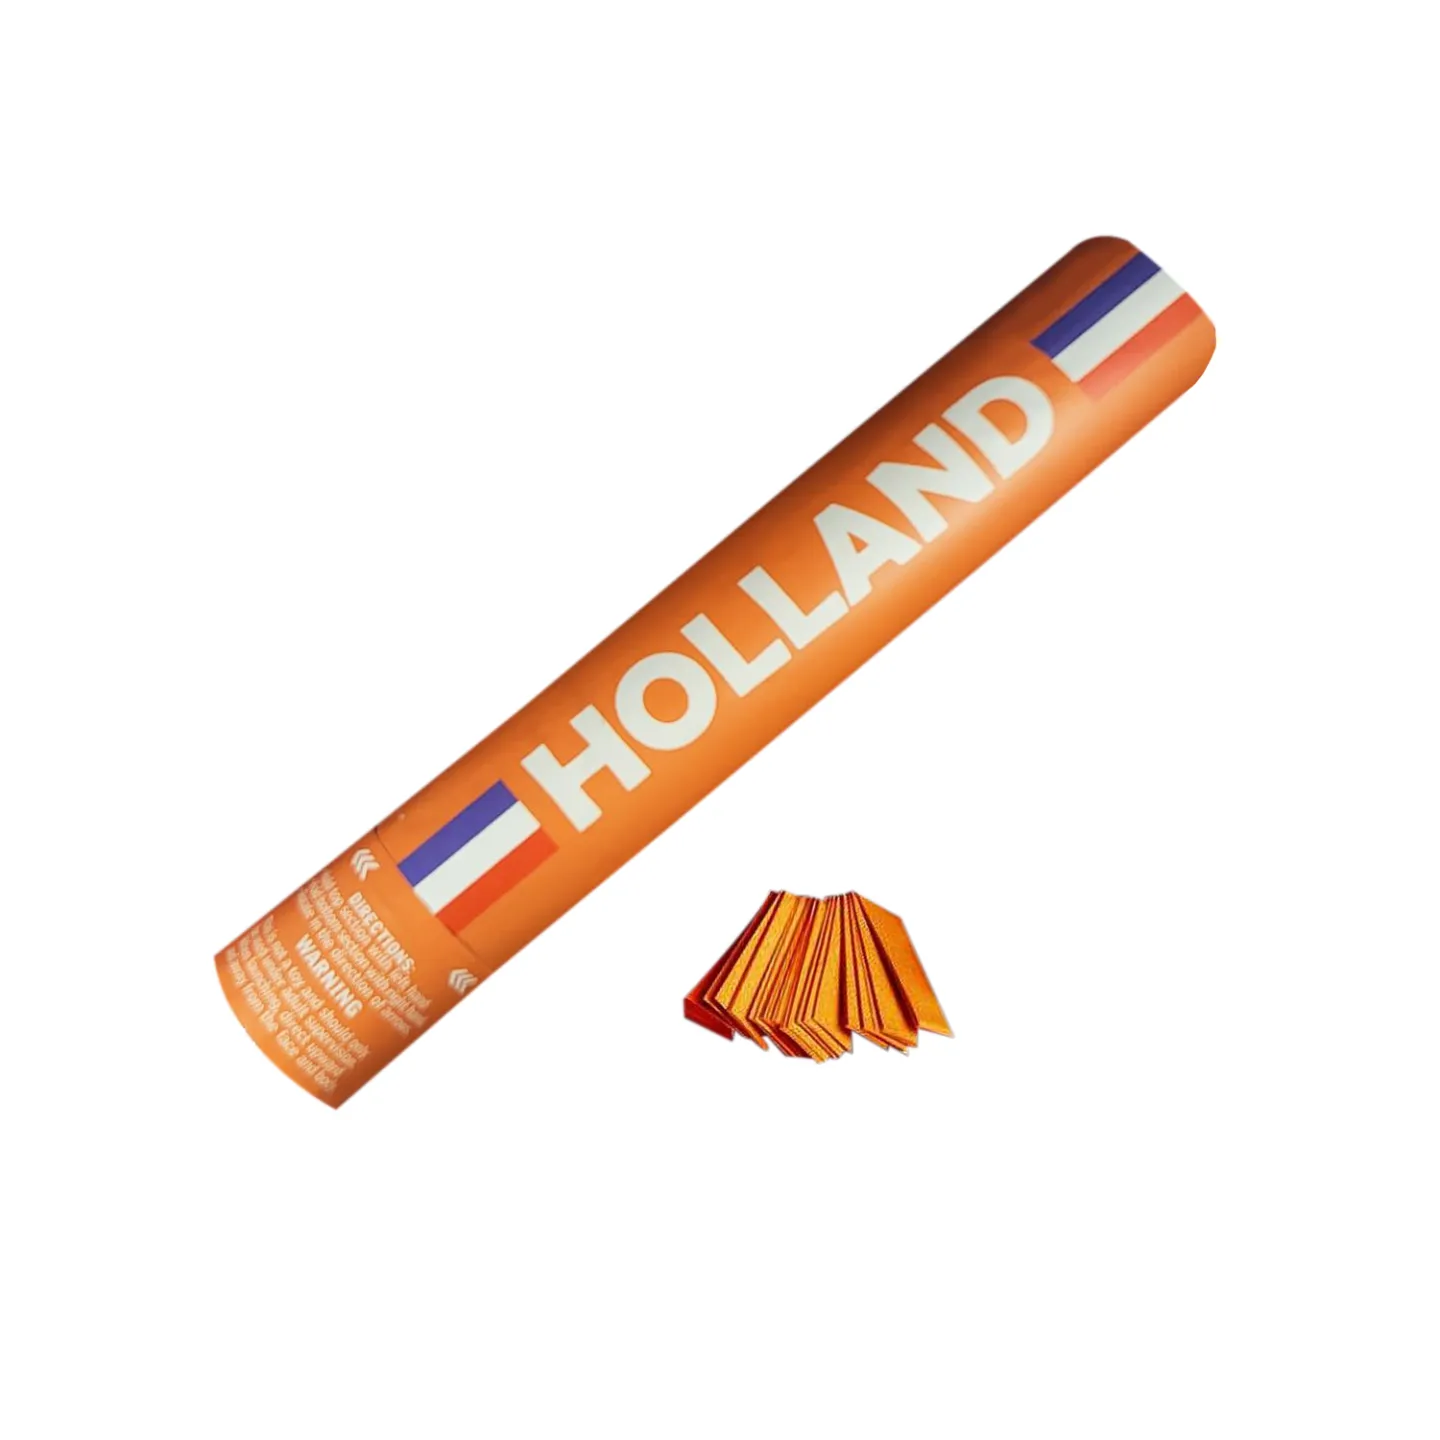 Budget confetti kanon Holland oranje 30cm.